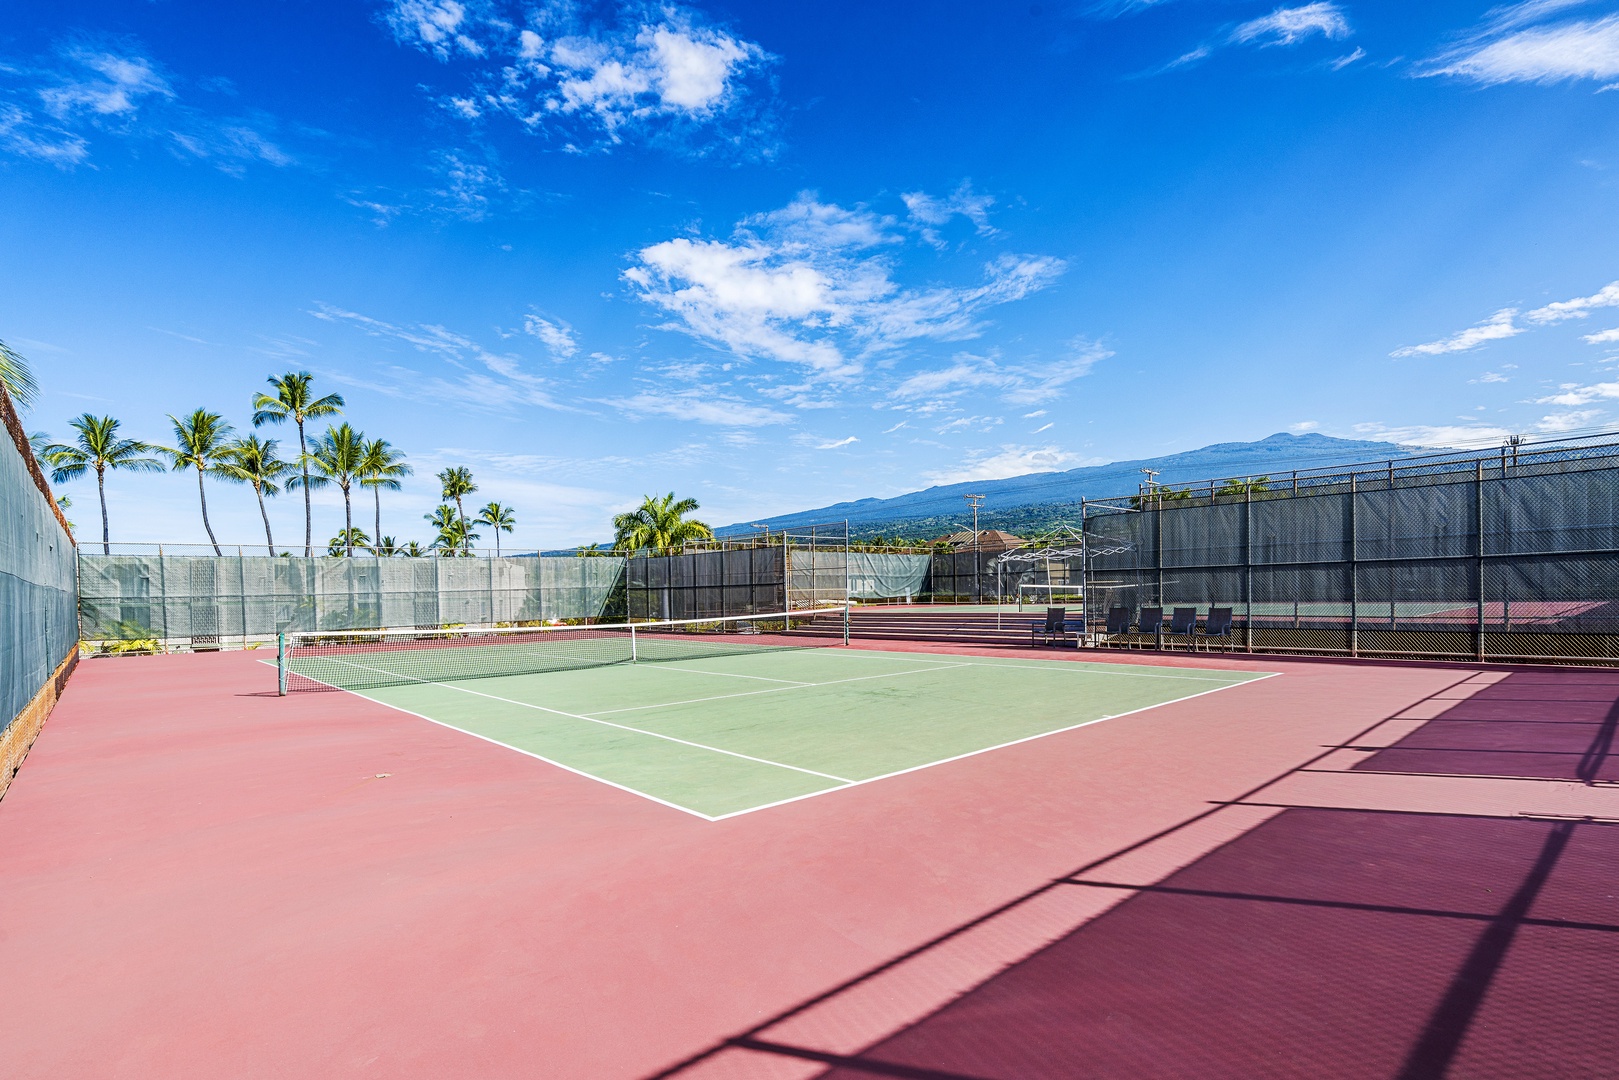 Kailua Kona Vacation Rentals, Kona Makai 6305 - Kona Makai tennis court!